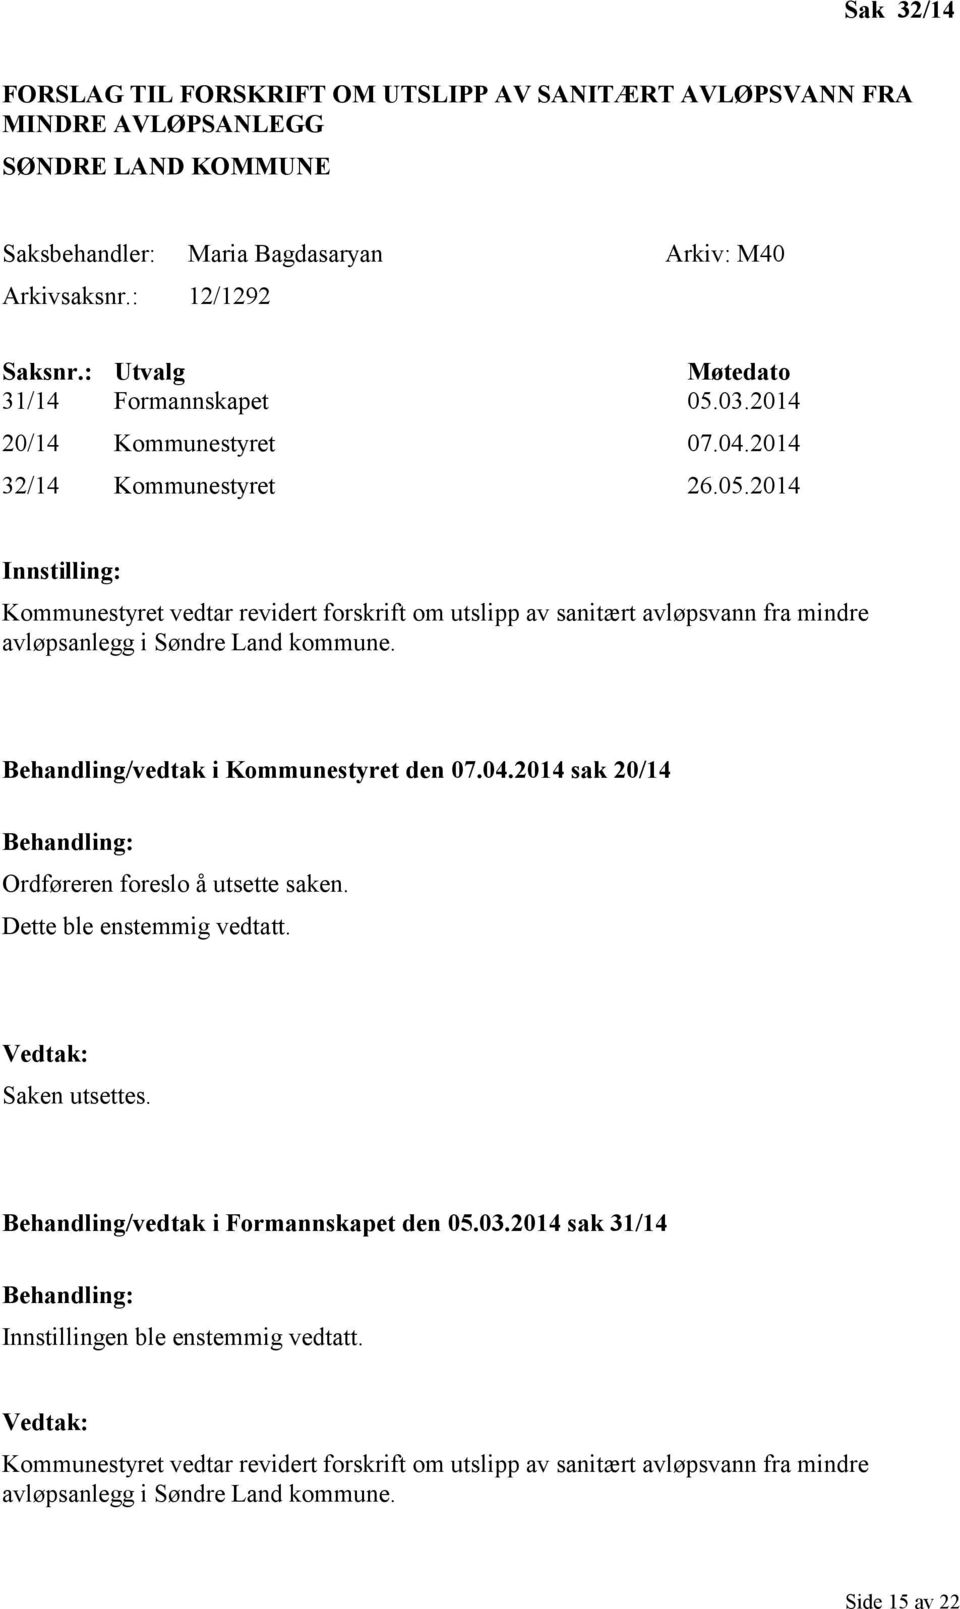 Behandling/vedtak i Kommunestyret den 07.04.2014 sak 20/14 Ordføreren foreslo å utsette saken. Dette ble enstemmig vedtatt. Saken utsettes. Behandling/vedtak i Formannskapet den 05.03.